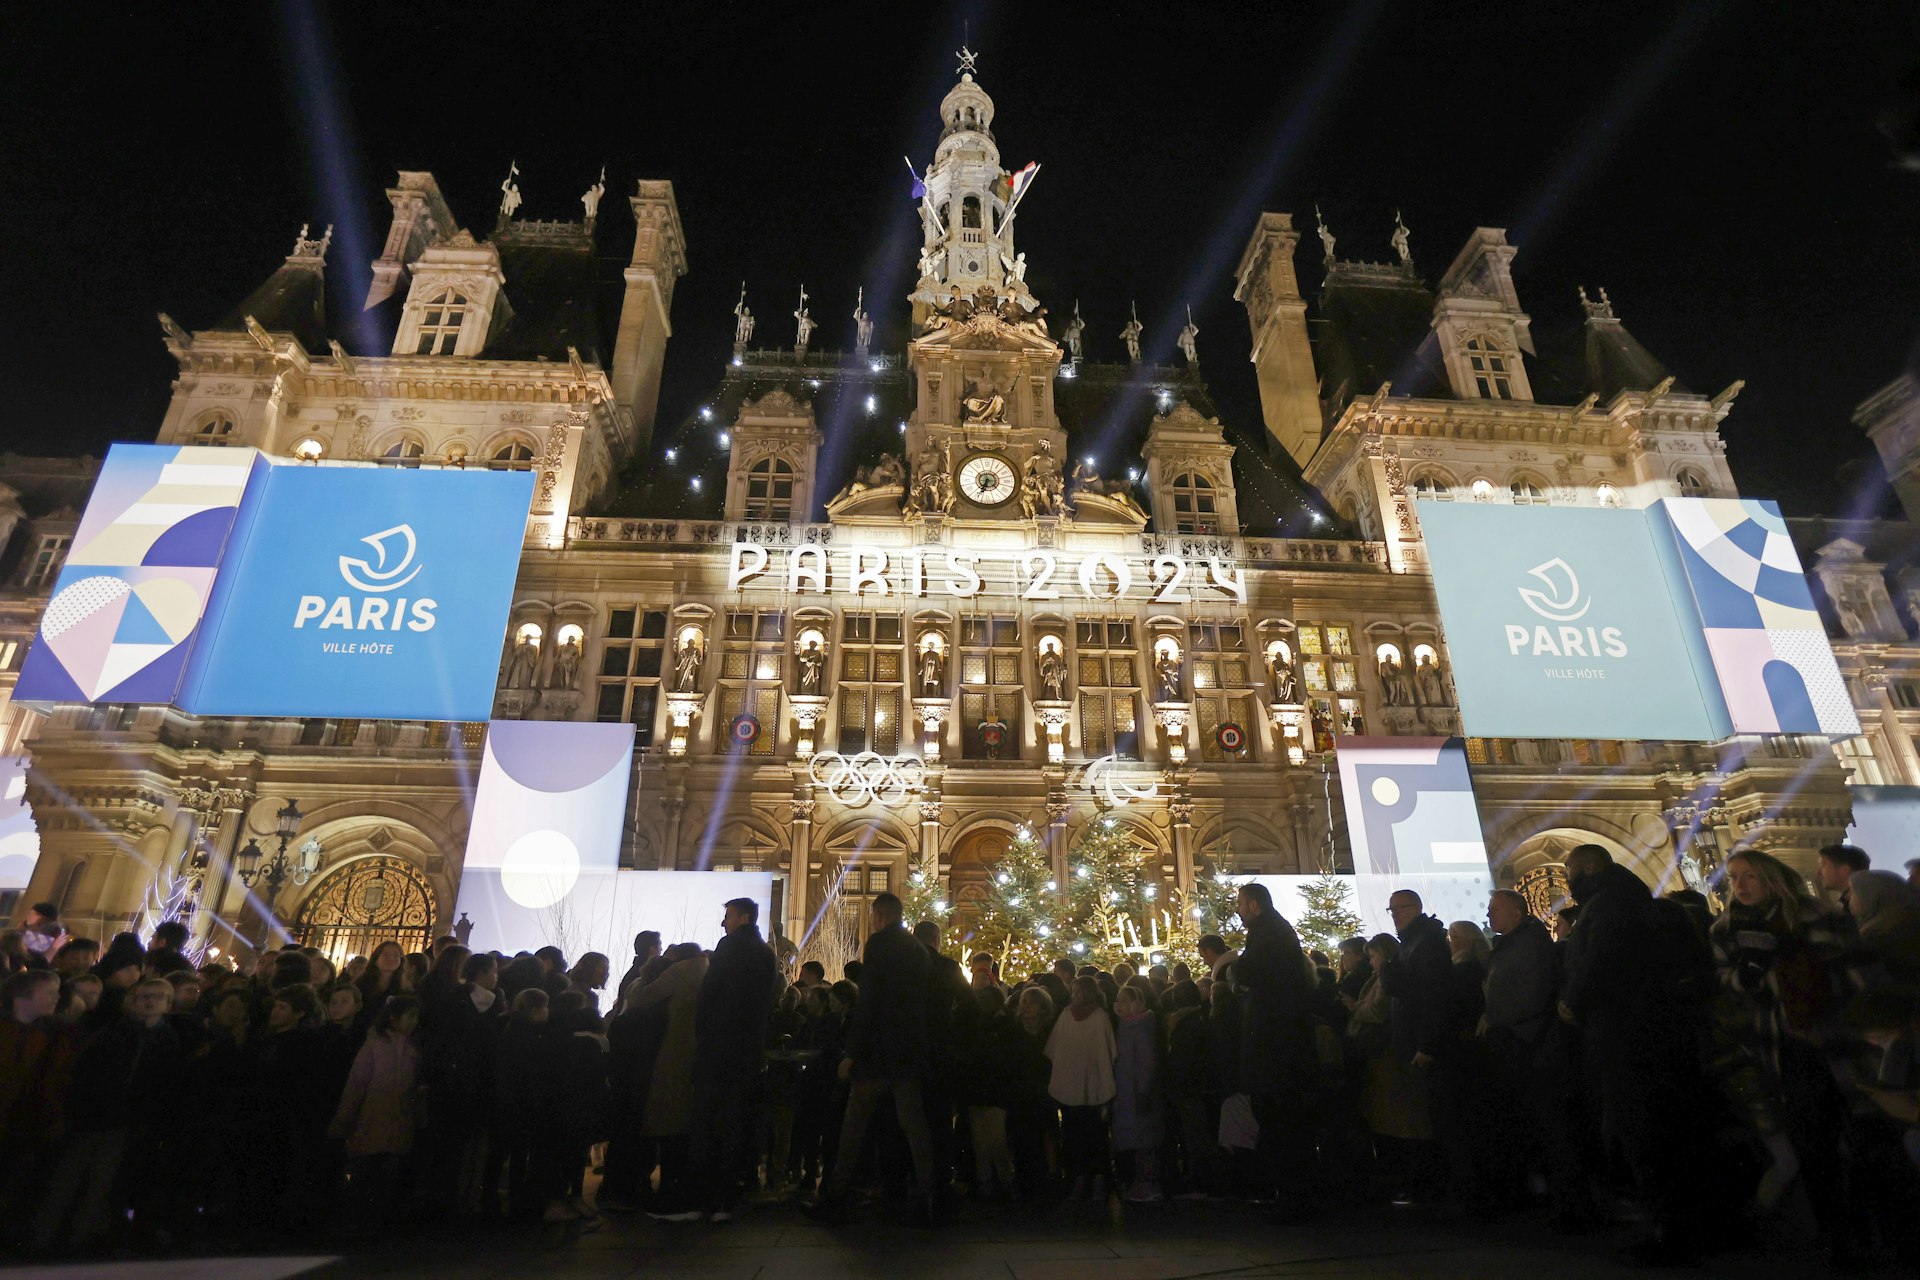 Логотип Парижа 2024 года, представляющий Олимпийские игры, за несколько месяцев до начала Олимпийских и Паралимпийских игр 2024 года в Париже отображается на освещенном фасаде парижской ратуши.